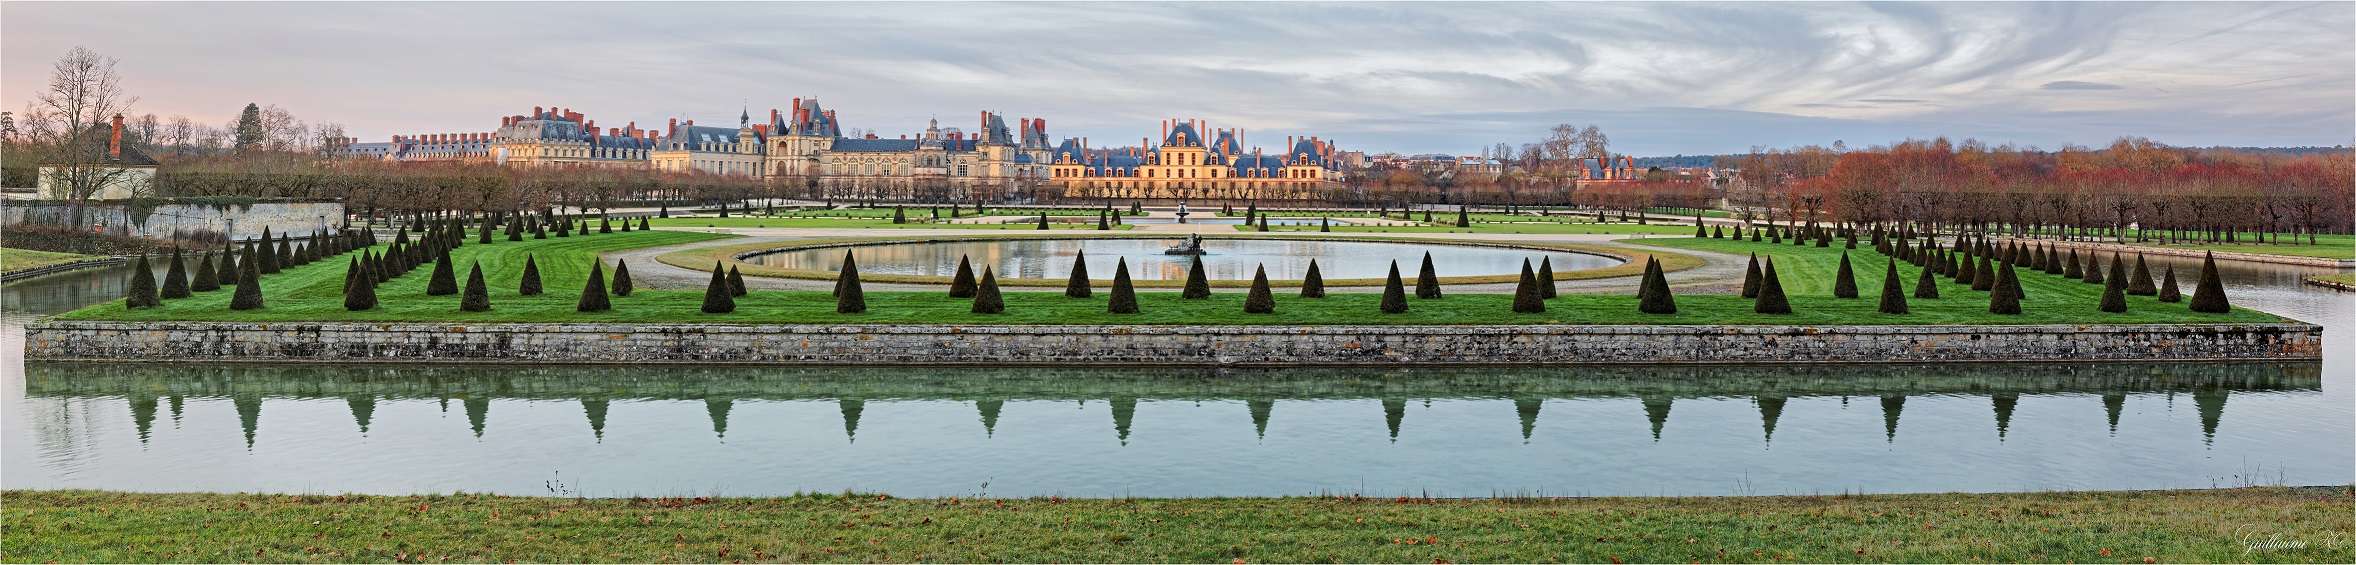 Chateau de Fontainebleau en pano 24025410